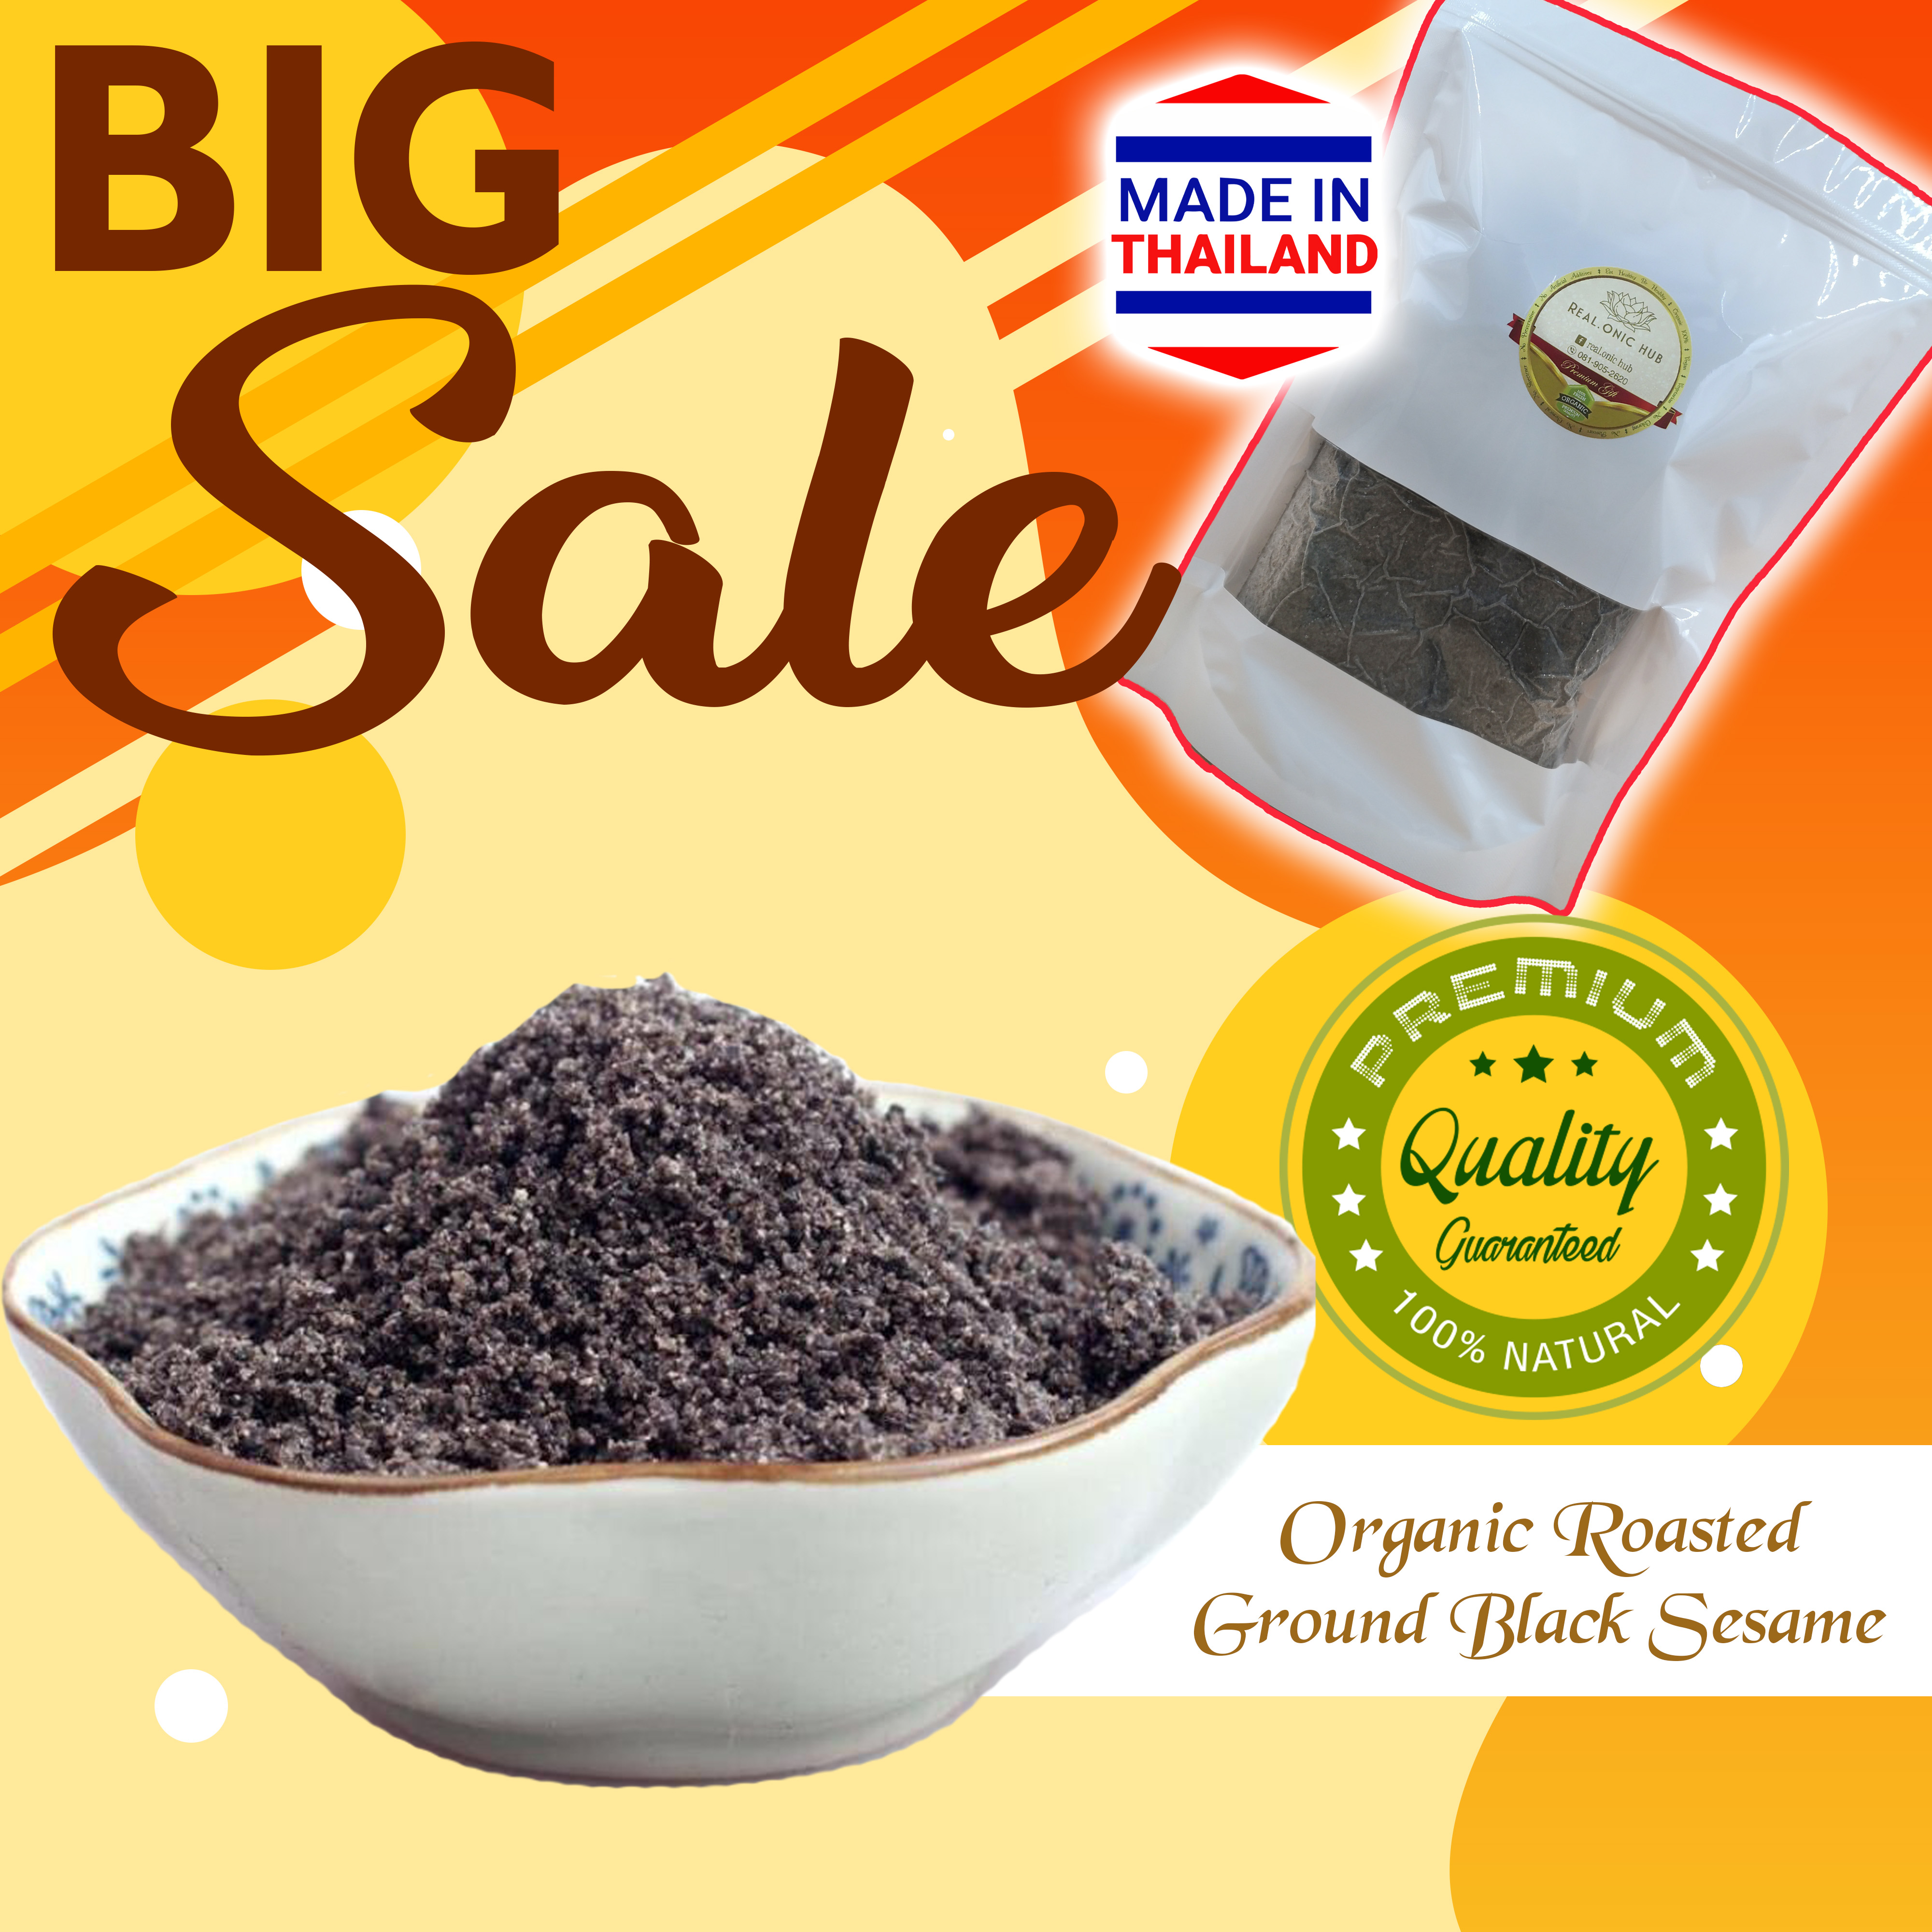 ขายส่ง😍 ถุงซิป/Zip Bag 500g. 💝 งาดำ ปลอดสาร คั่วบด (Organic Roasted Ground Black Sesame) 💝 ธัญพืช พร้อมทาน